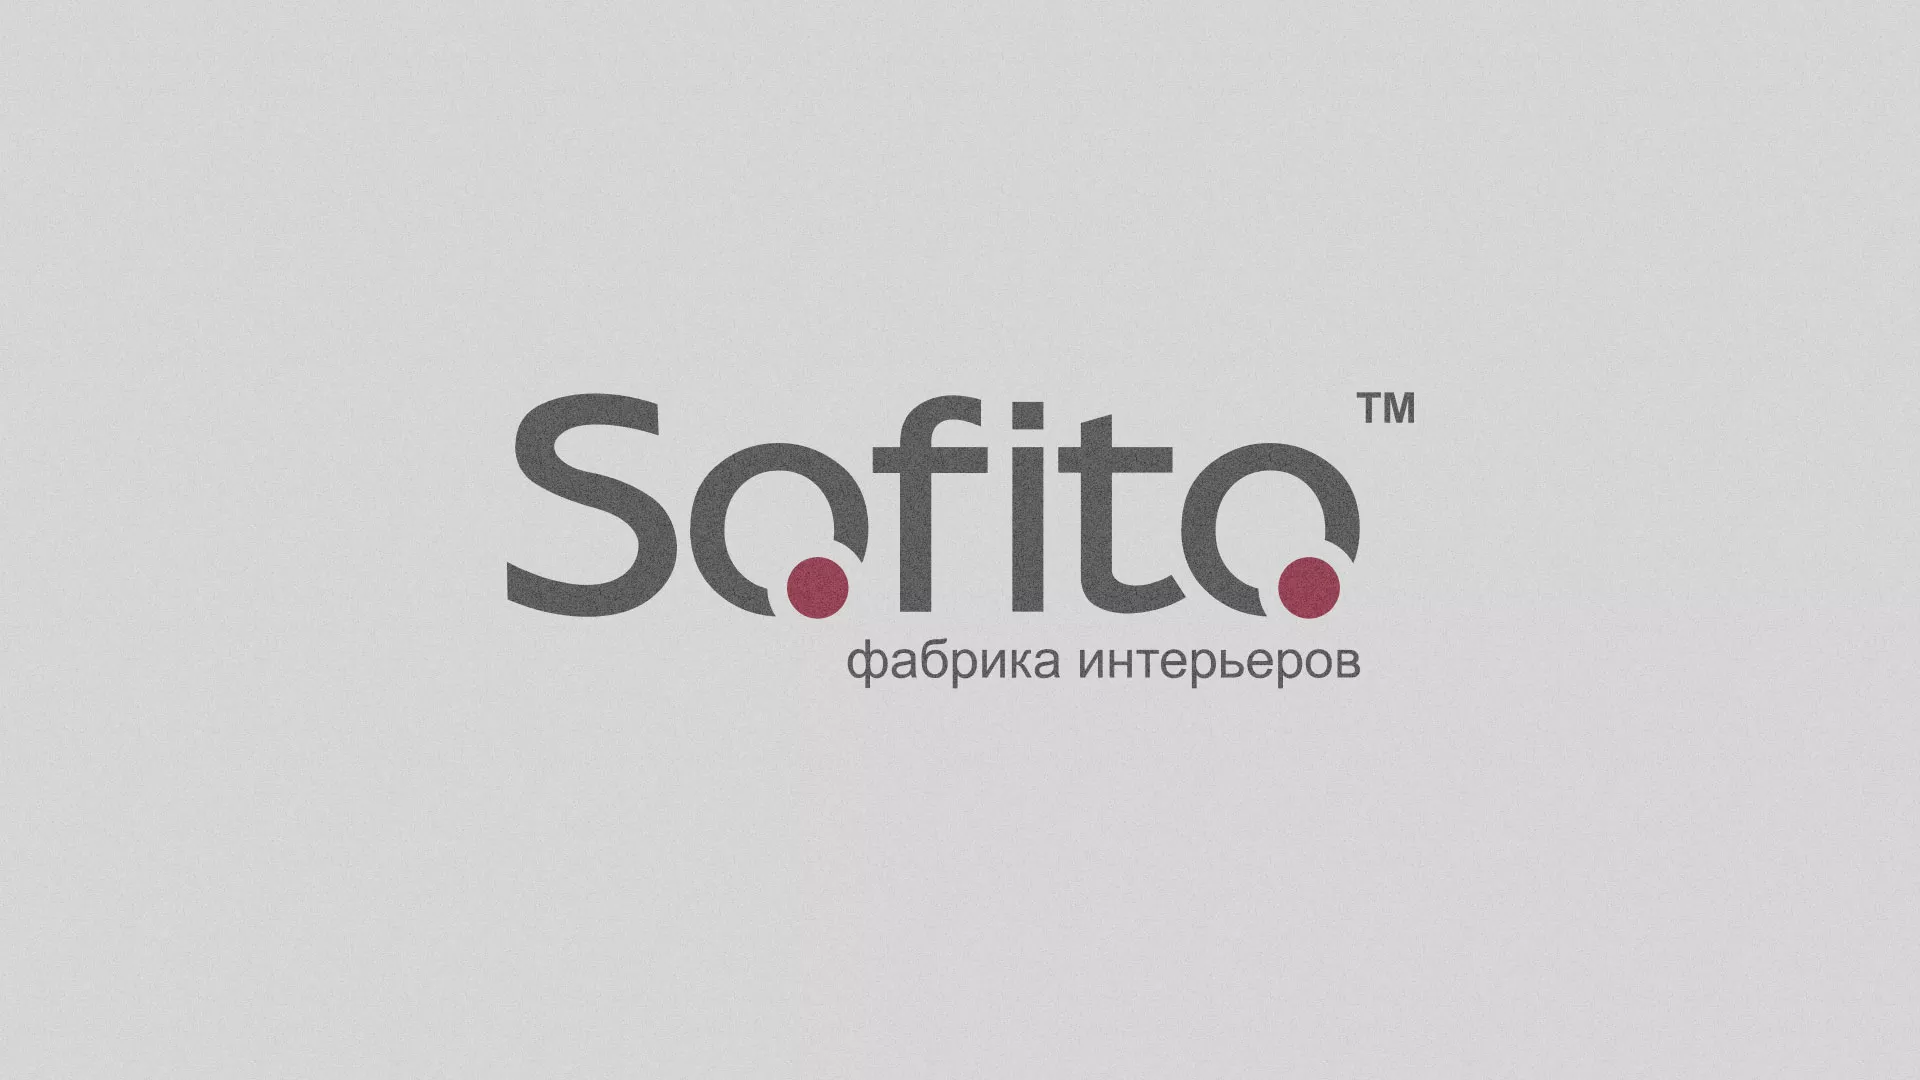 Создание сайта по натяжным потолкам для компании «Софито» в Соколе